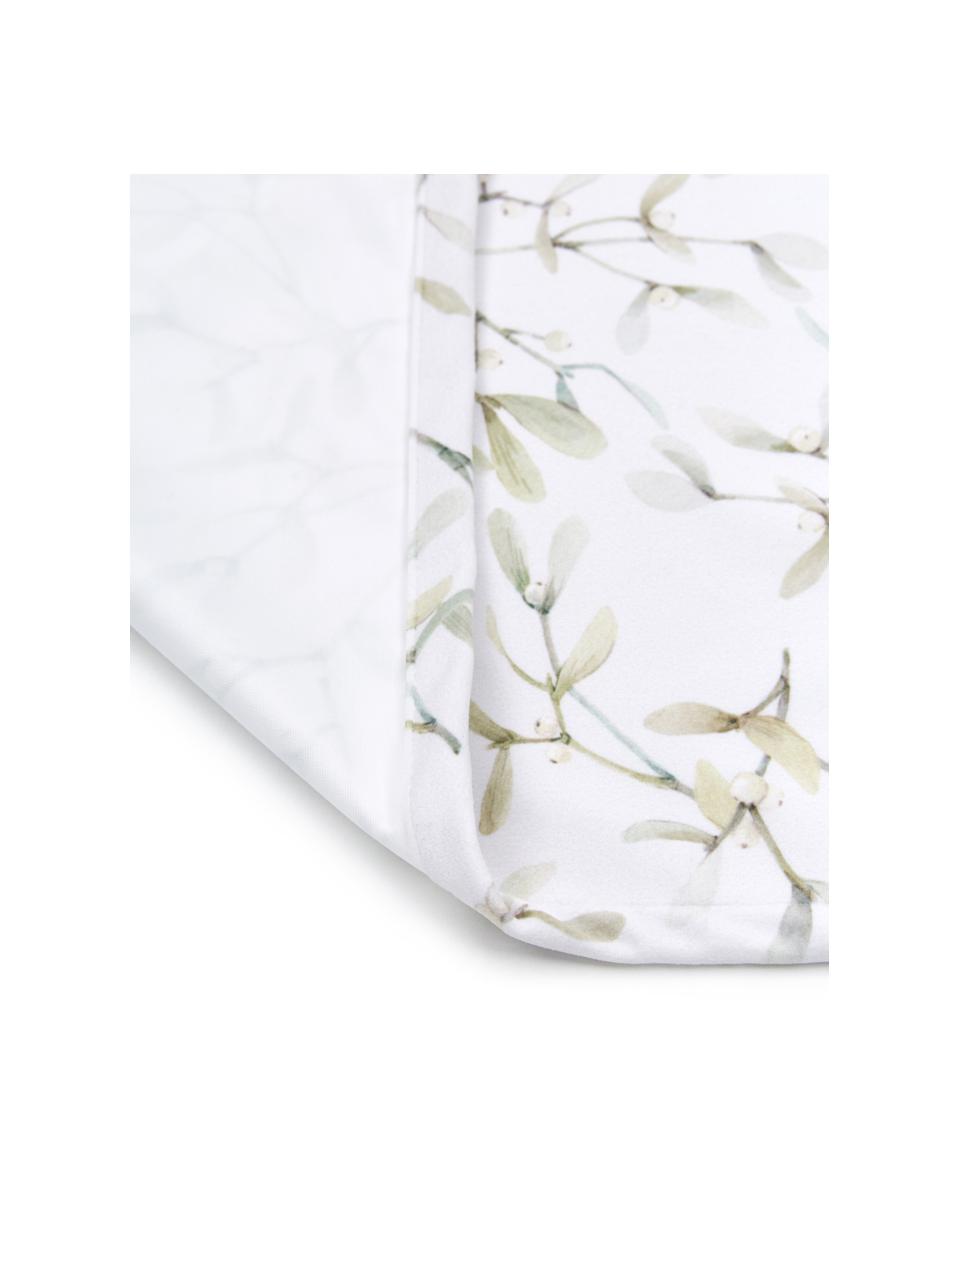 Tischläufer Fairytale mit Mistelzweig-Muster, 100% Polyester, Gebrochenes Weiß, Grüntöne, 40 x 145 cm